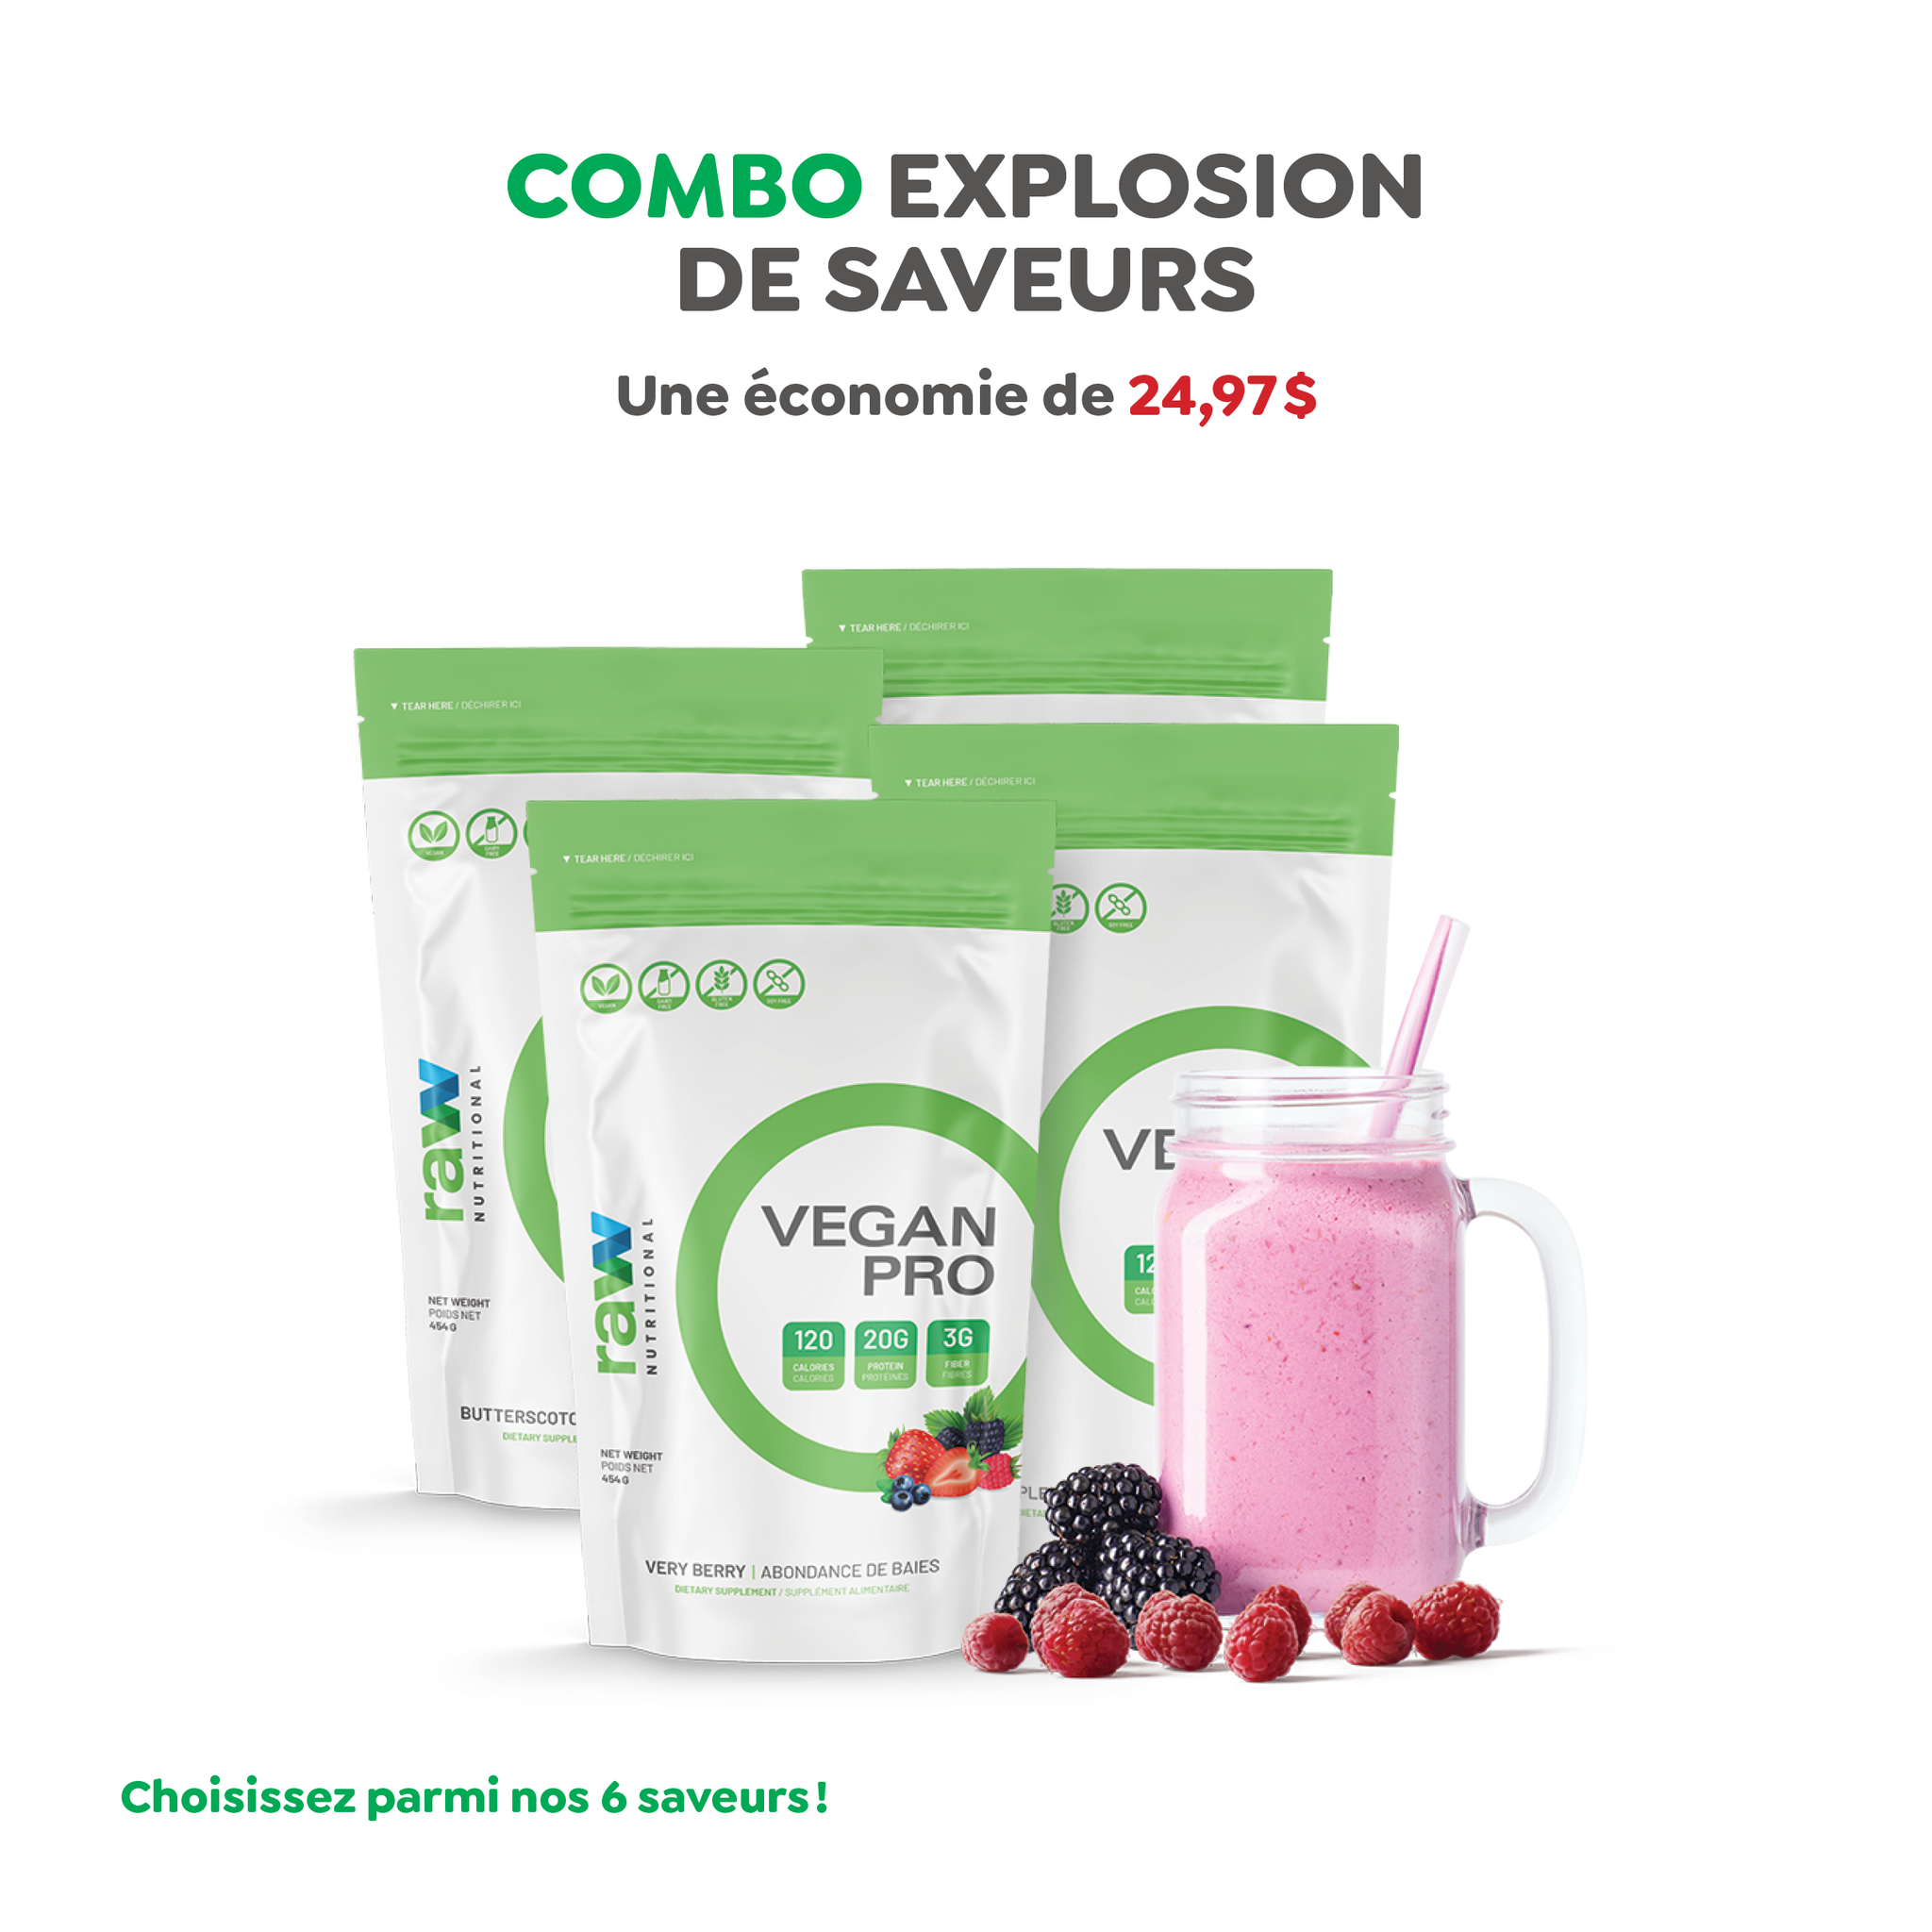 The Flavor Explosion Combo||Combo Explosion de Saveurs